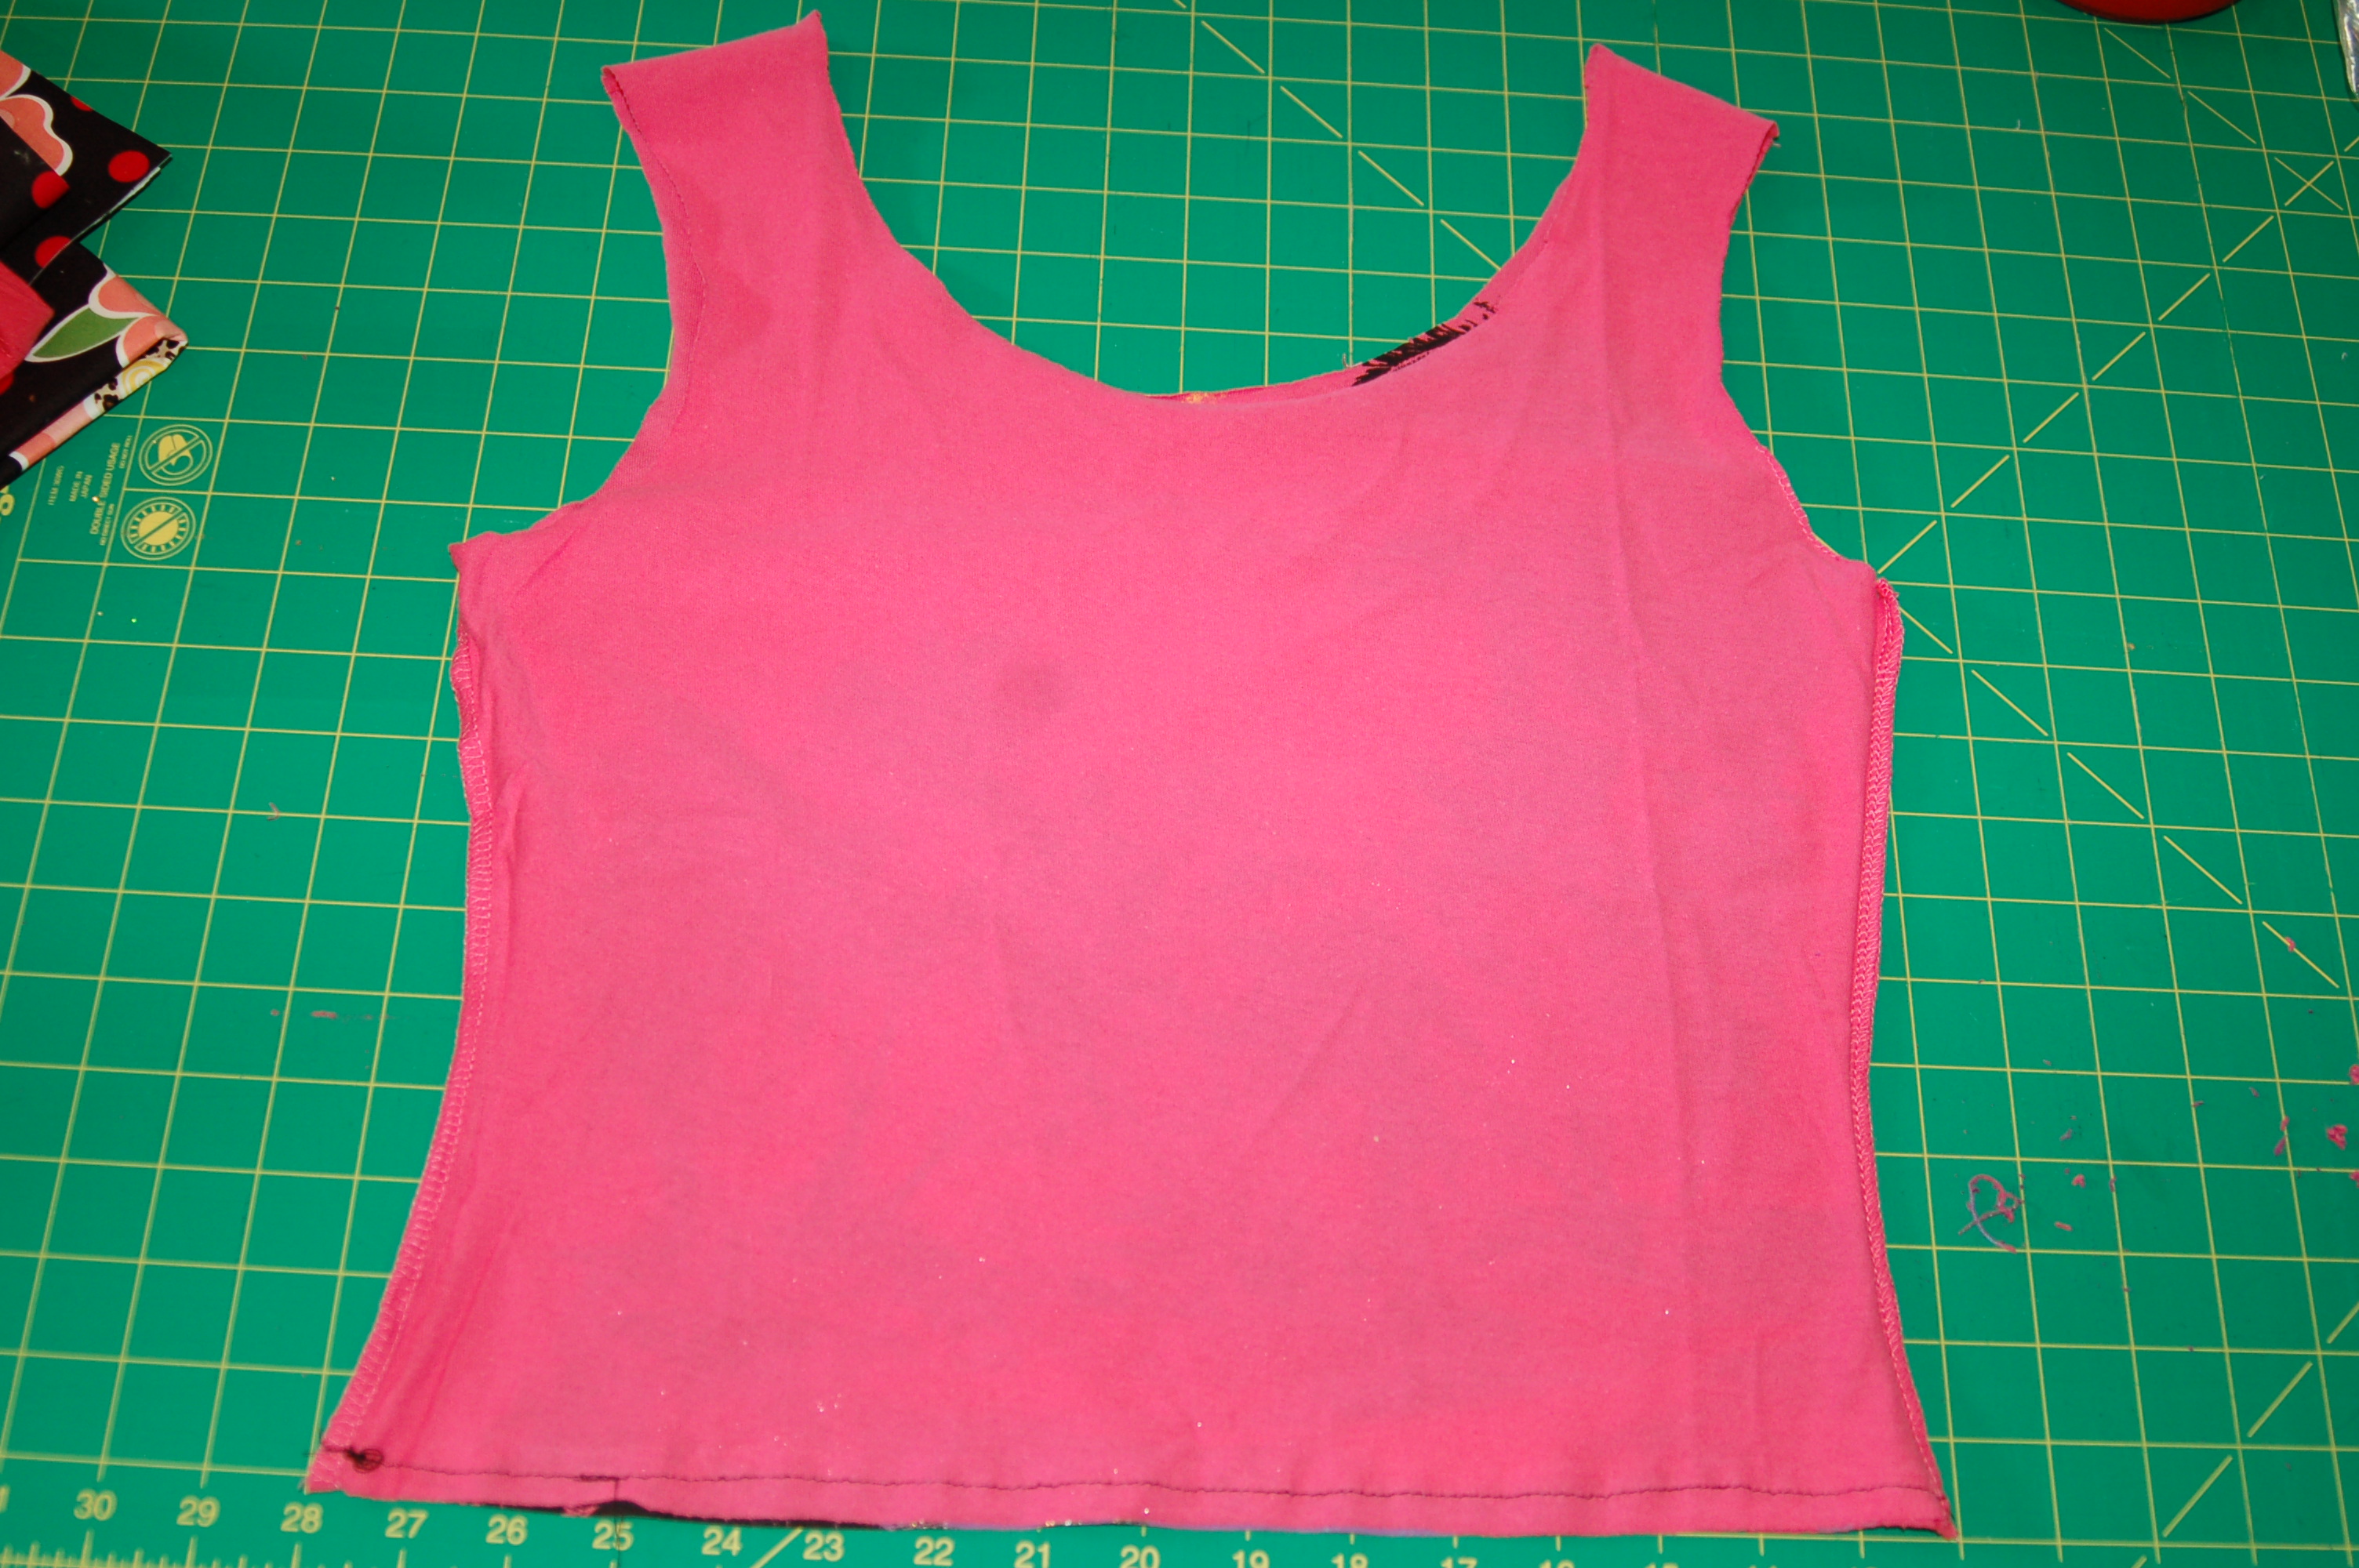 T-shirt Bag - Pink Polka Dot Creations